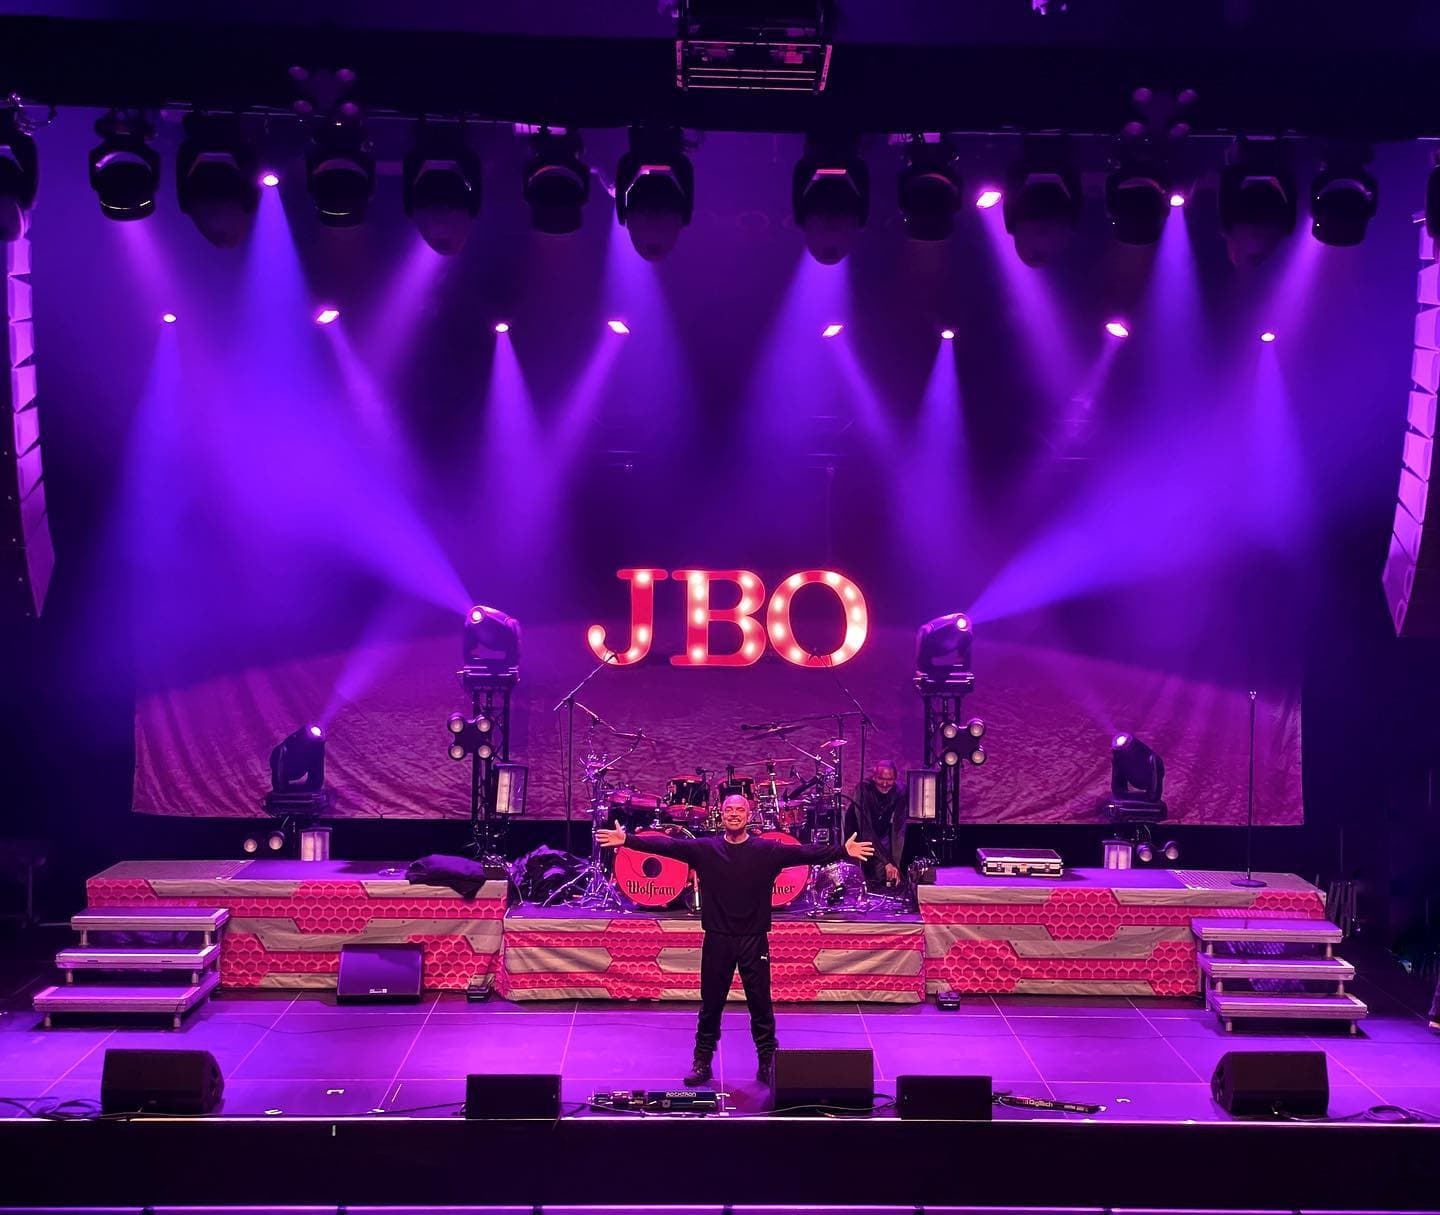 Instagram:@hannes_holzmann_jbo präsentiert die Bühne in der @rockhallux, wo wir heute Abend spielen - wir freuen uns auf Euch! 😍🥰 